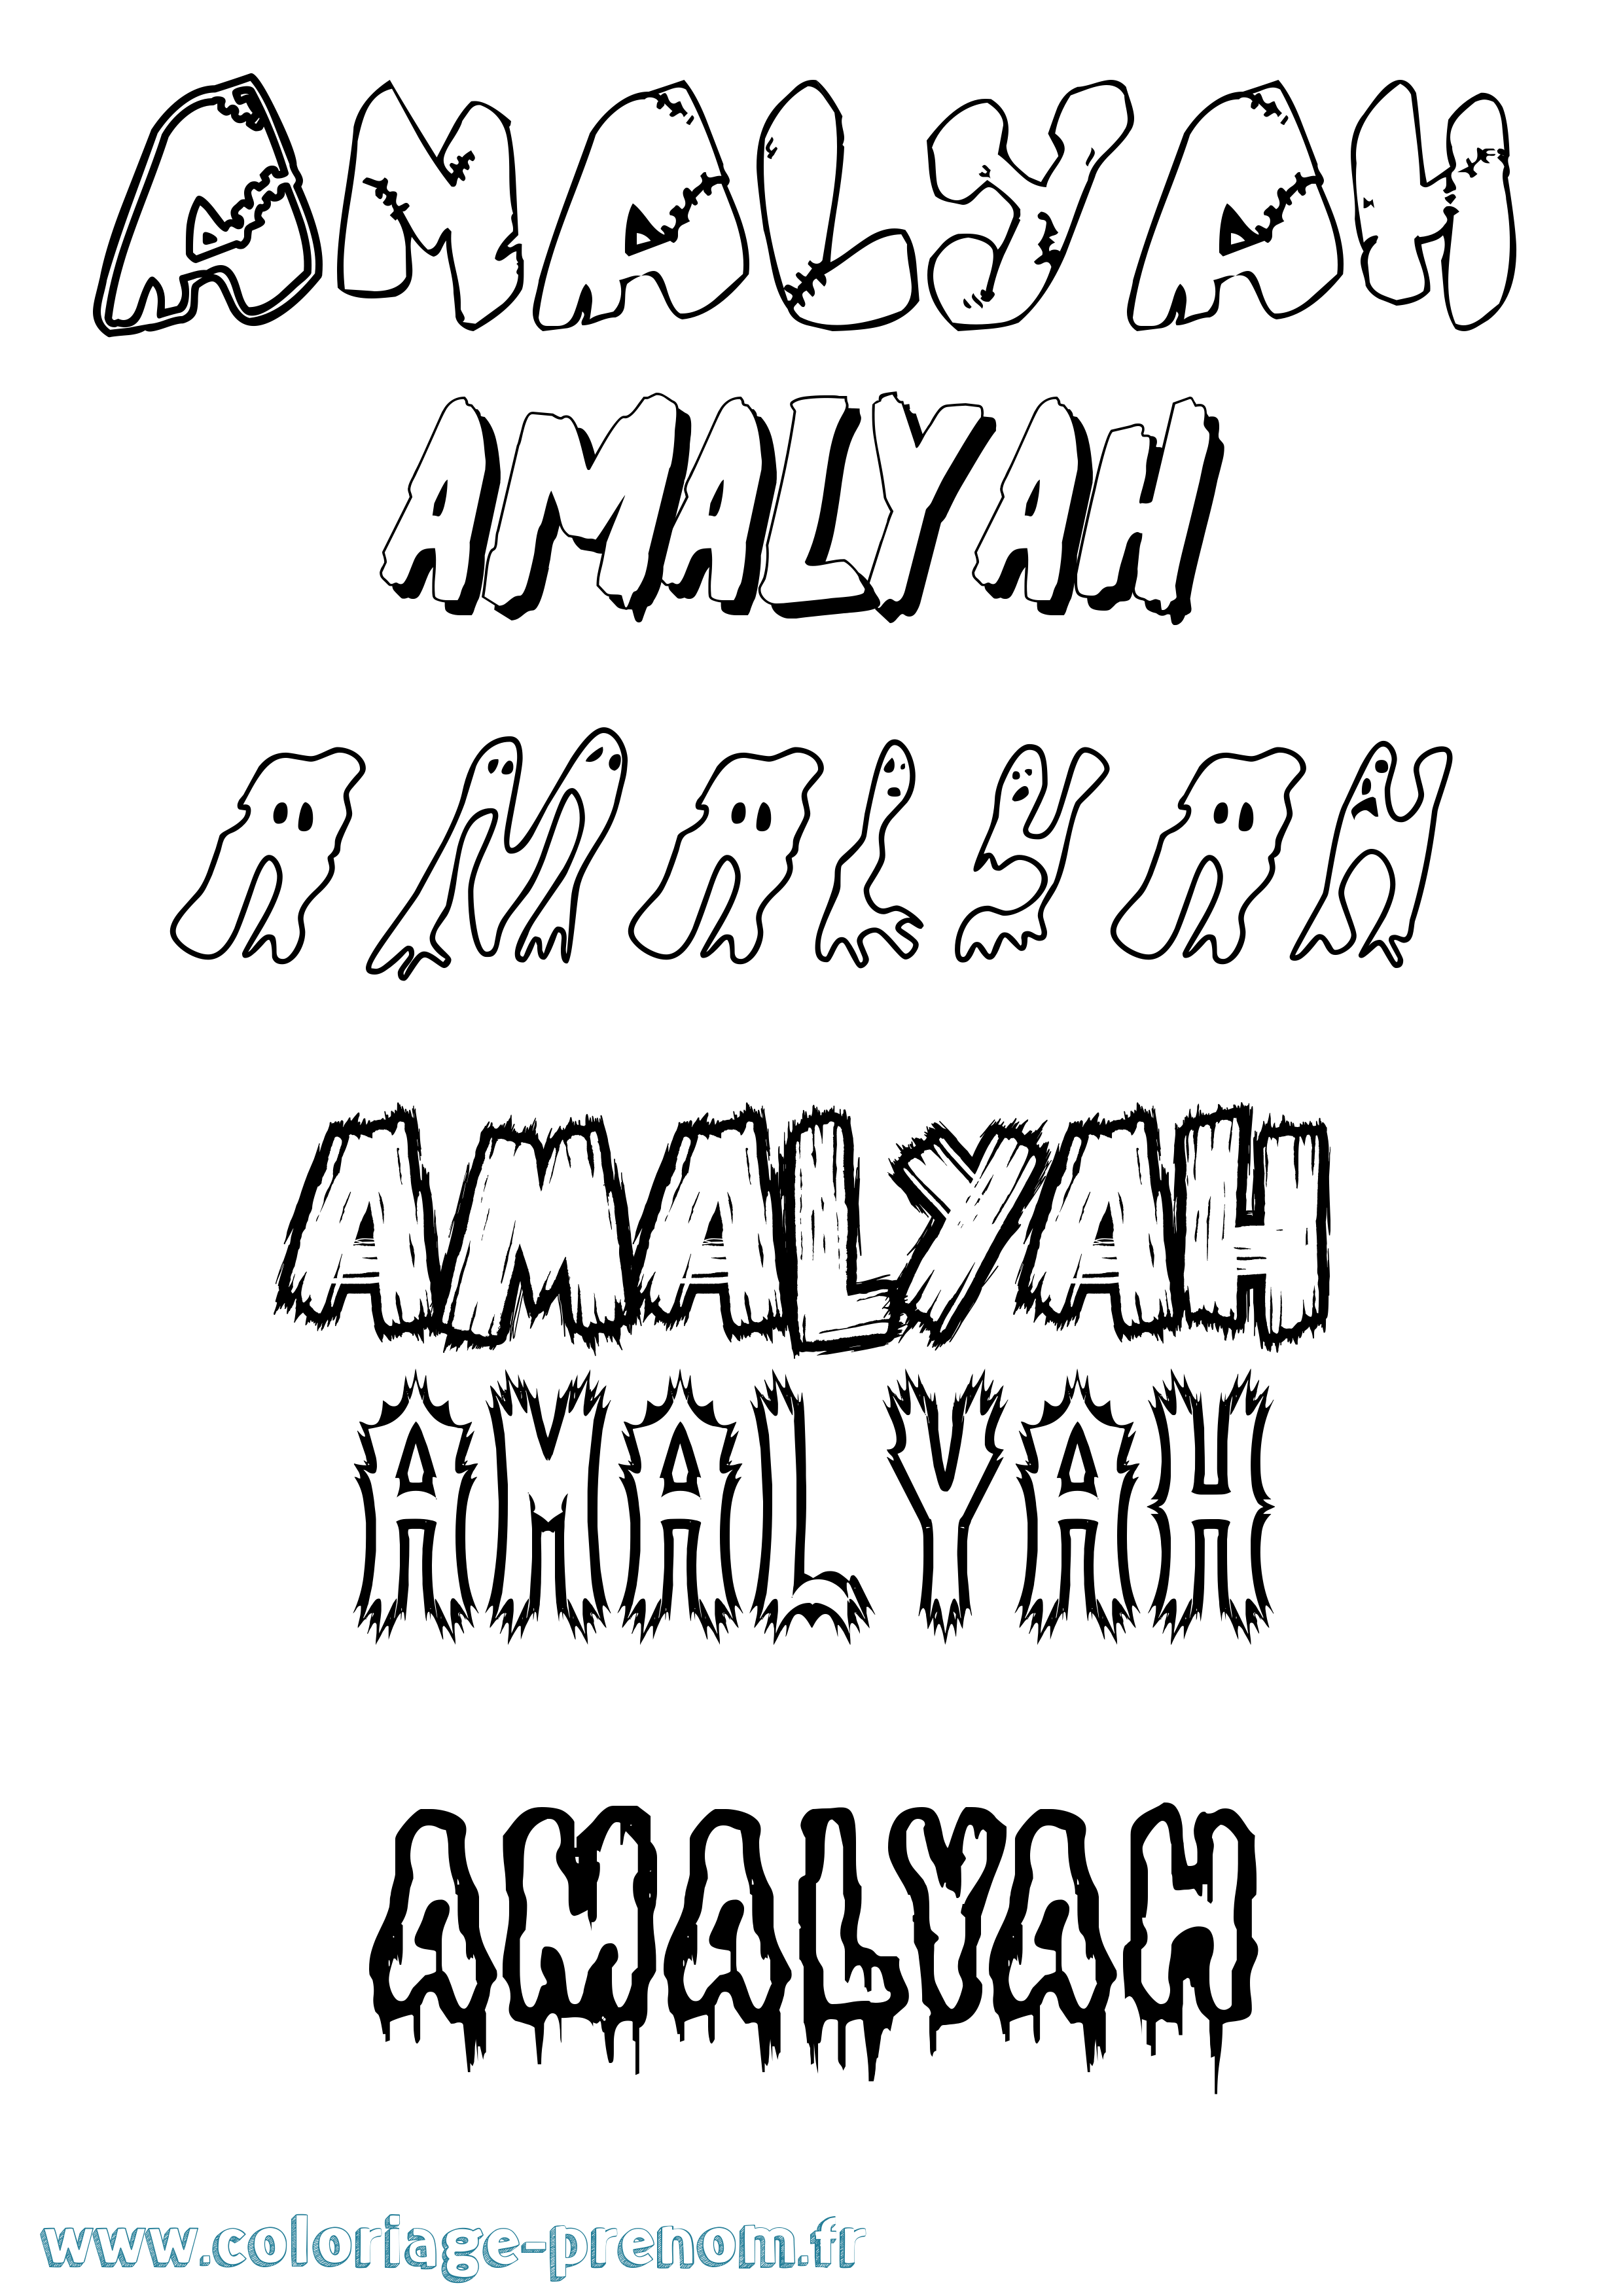 Coloriage prénom Amalyah Frisson